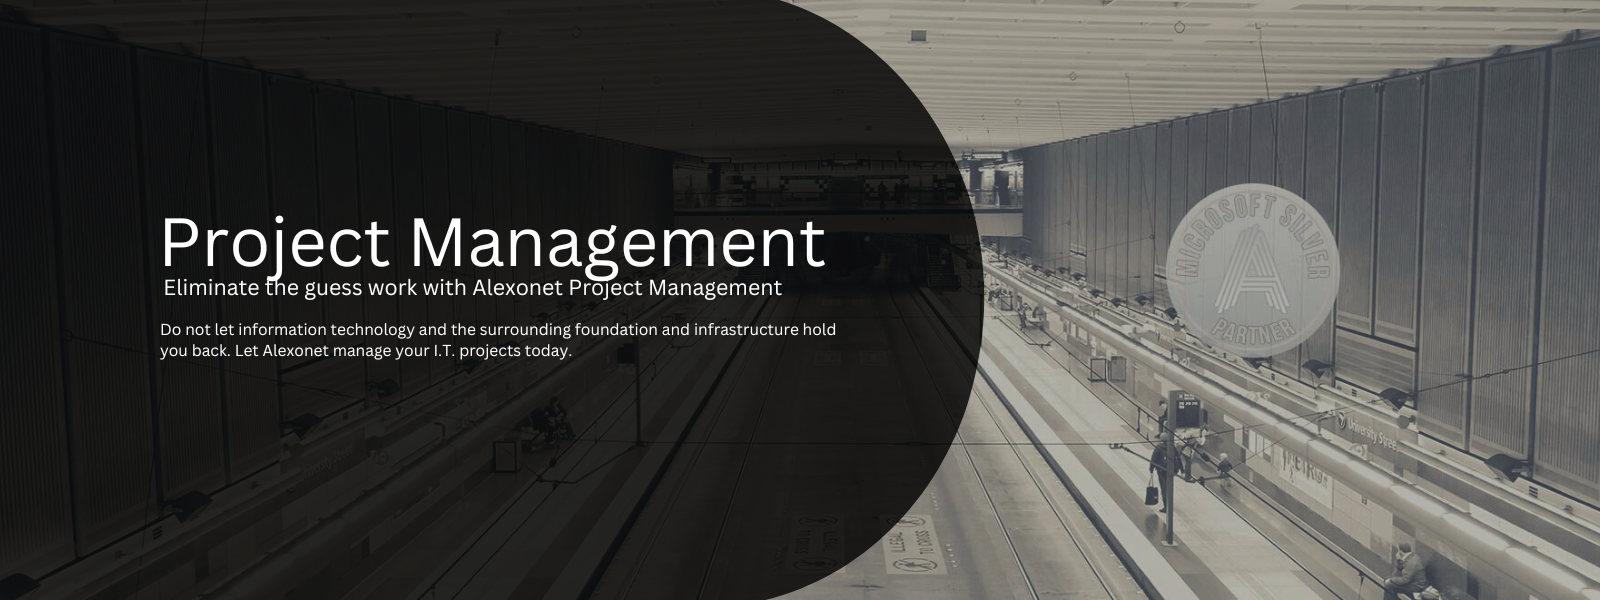 Alexonet Project Management